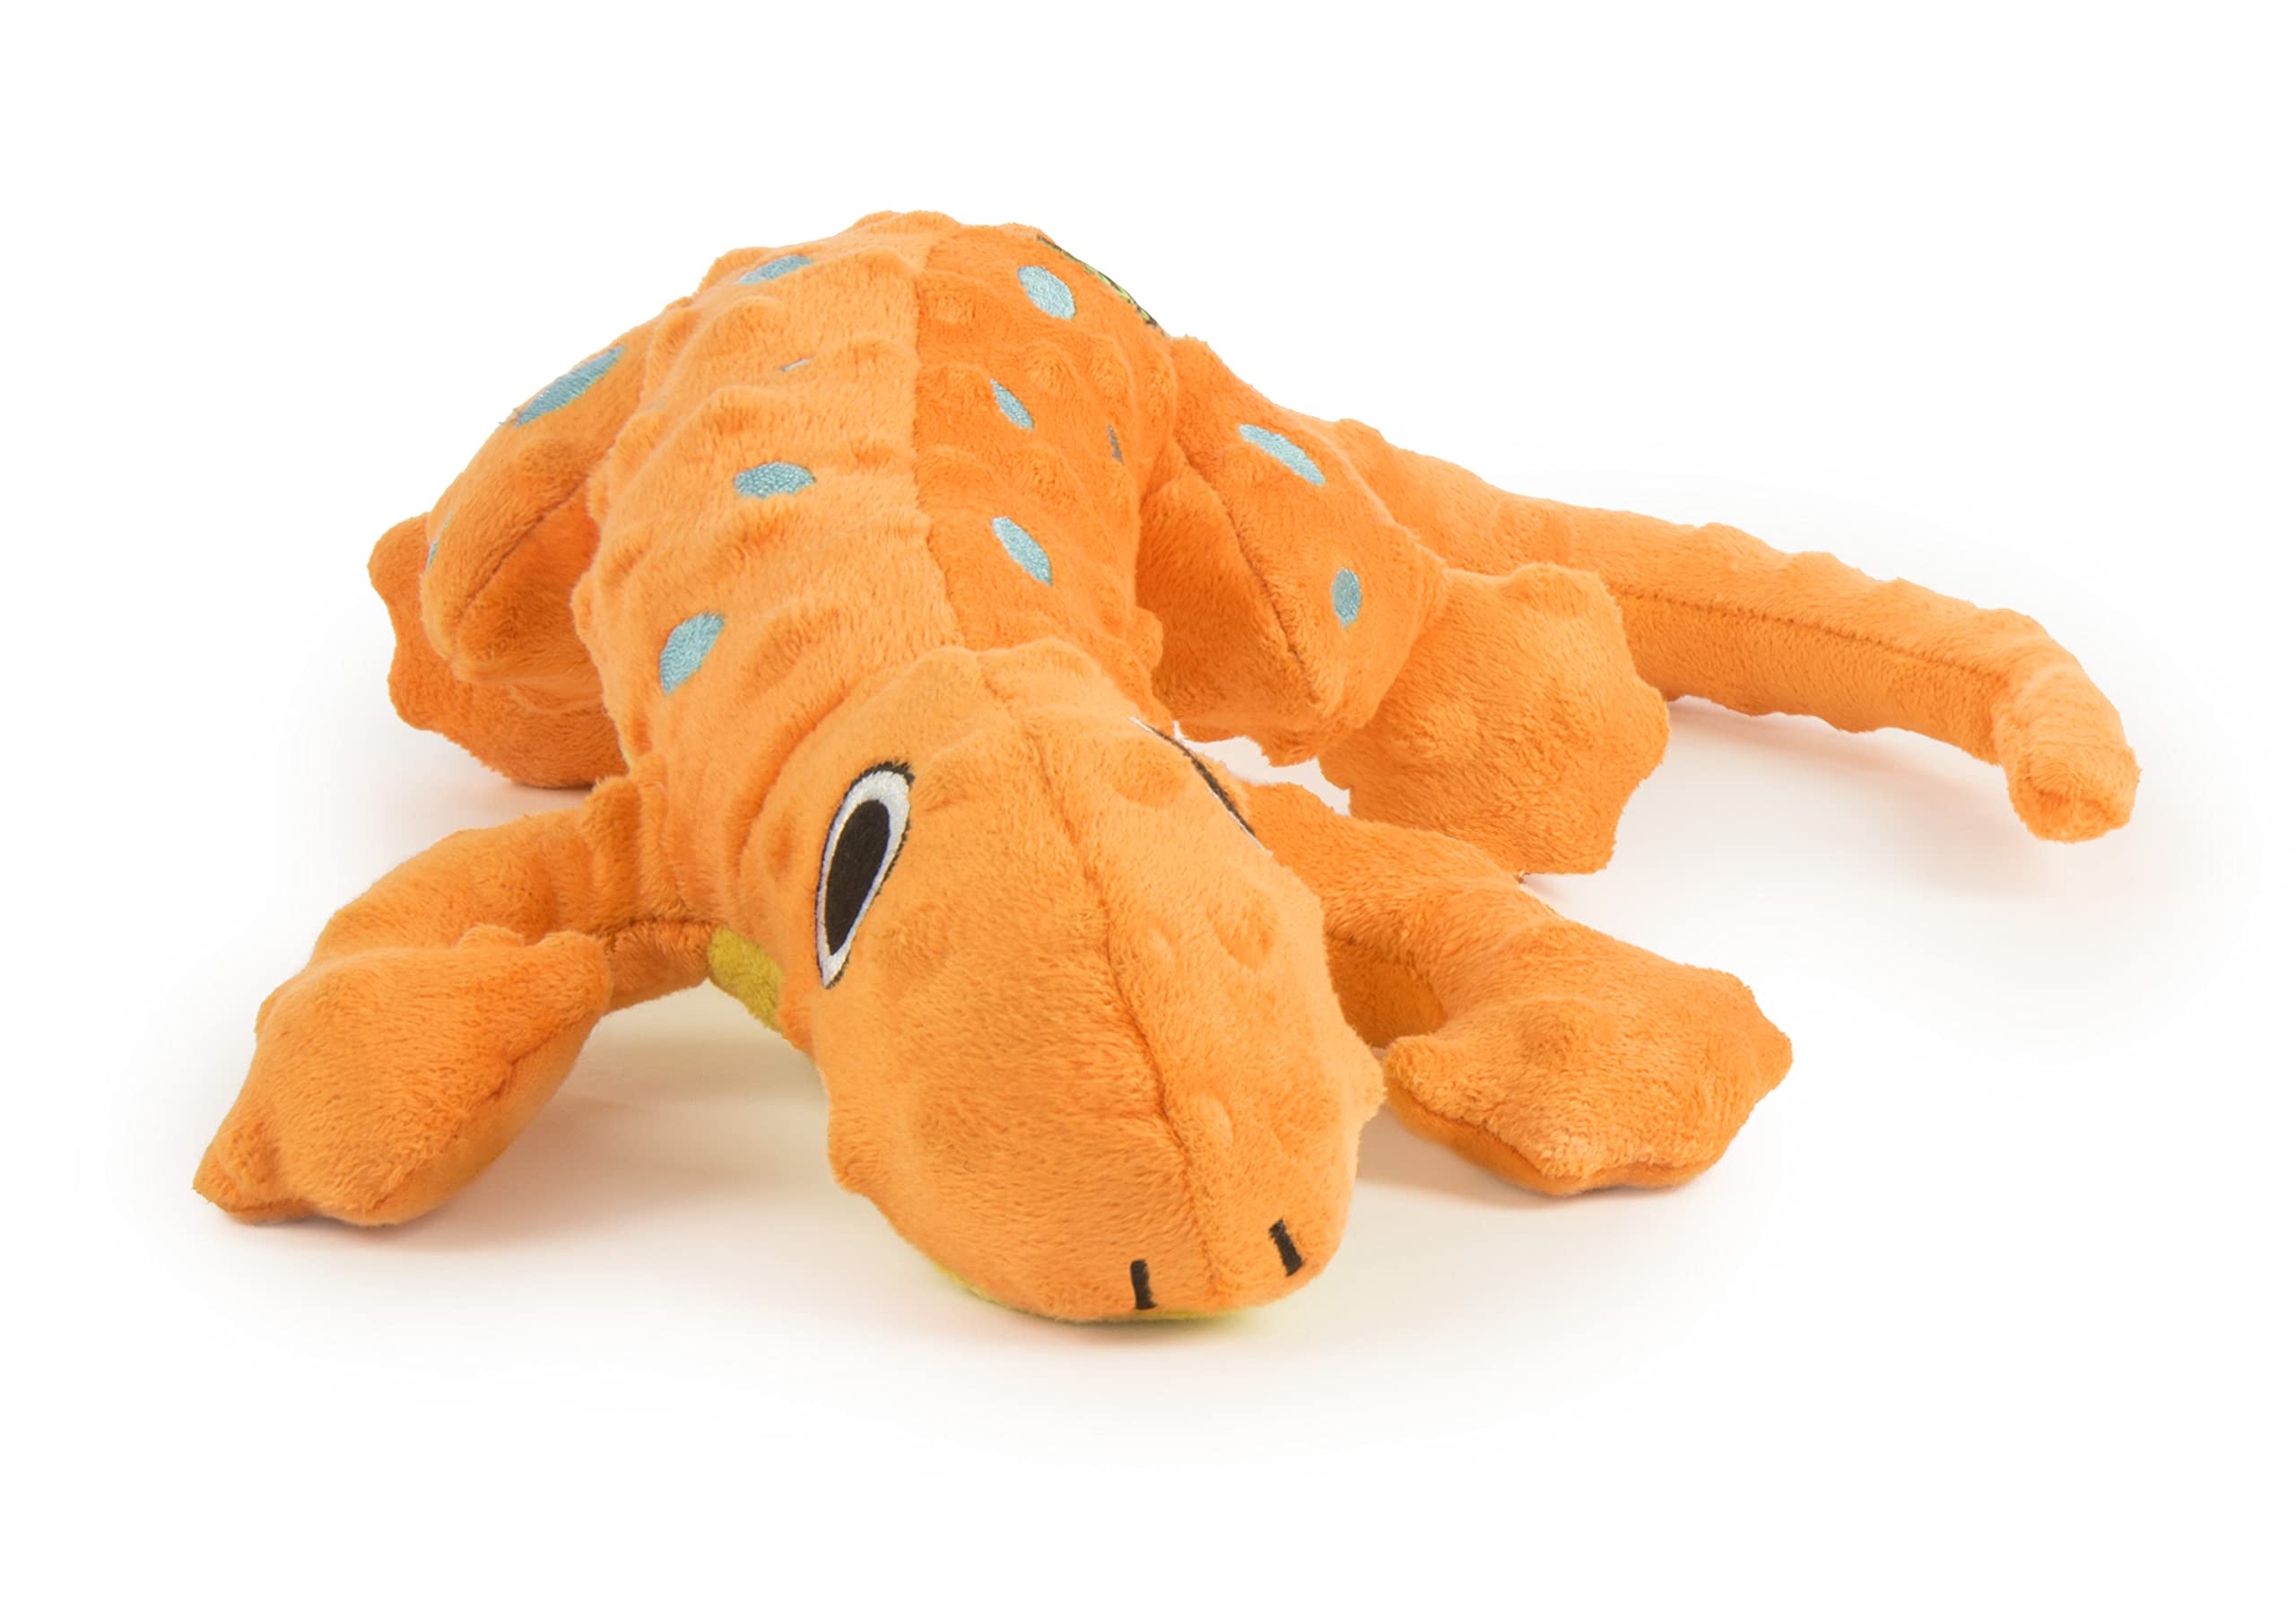 goDog Amphibianz Gecko Squeaky Plush Dog Toy, Chew Guard Technology - Orange, Large